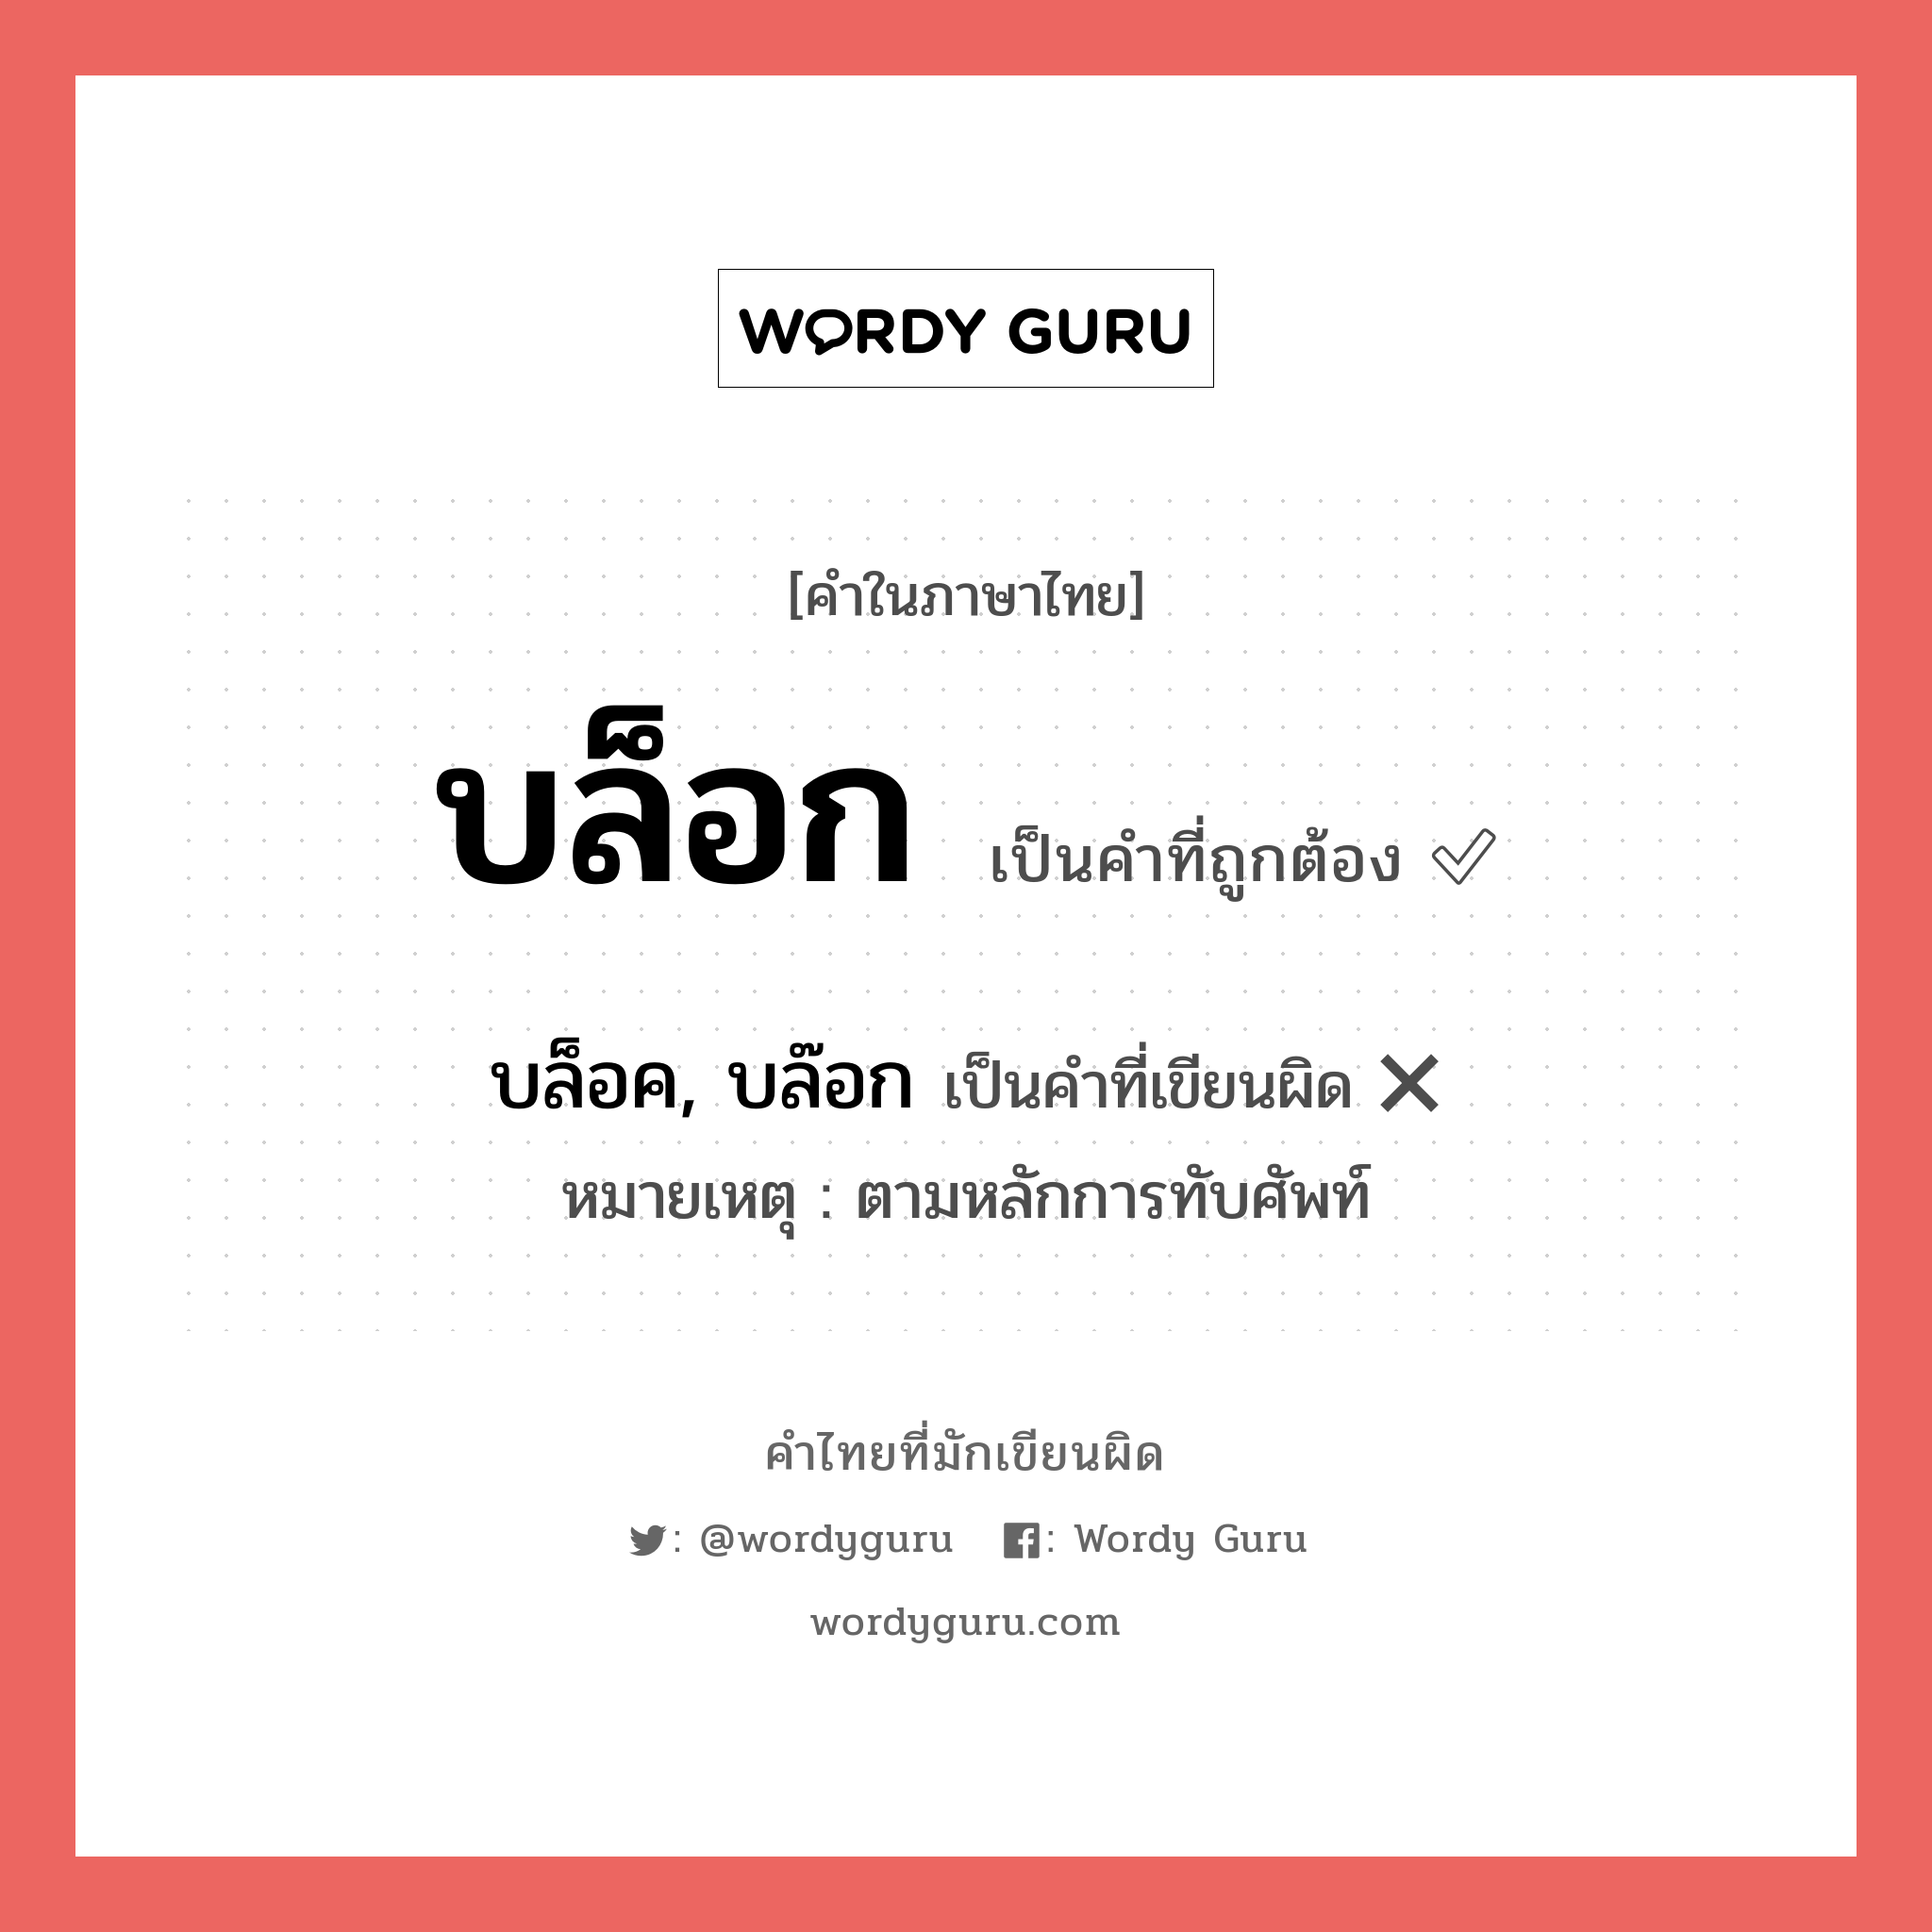 บล็อก หรือ บล็อค, บล๊อก คำไหนเขียนถูก?, คำในภาษาไทยที่มักเขียนผิด บล็อก คำที่ผิด ❌ บล็อค, บล๊อก หมายเหตุ ตามหลักการทับศัพท์